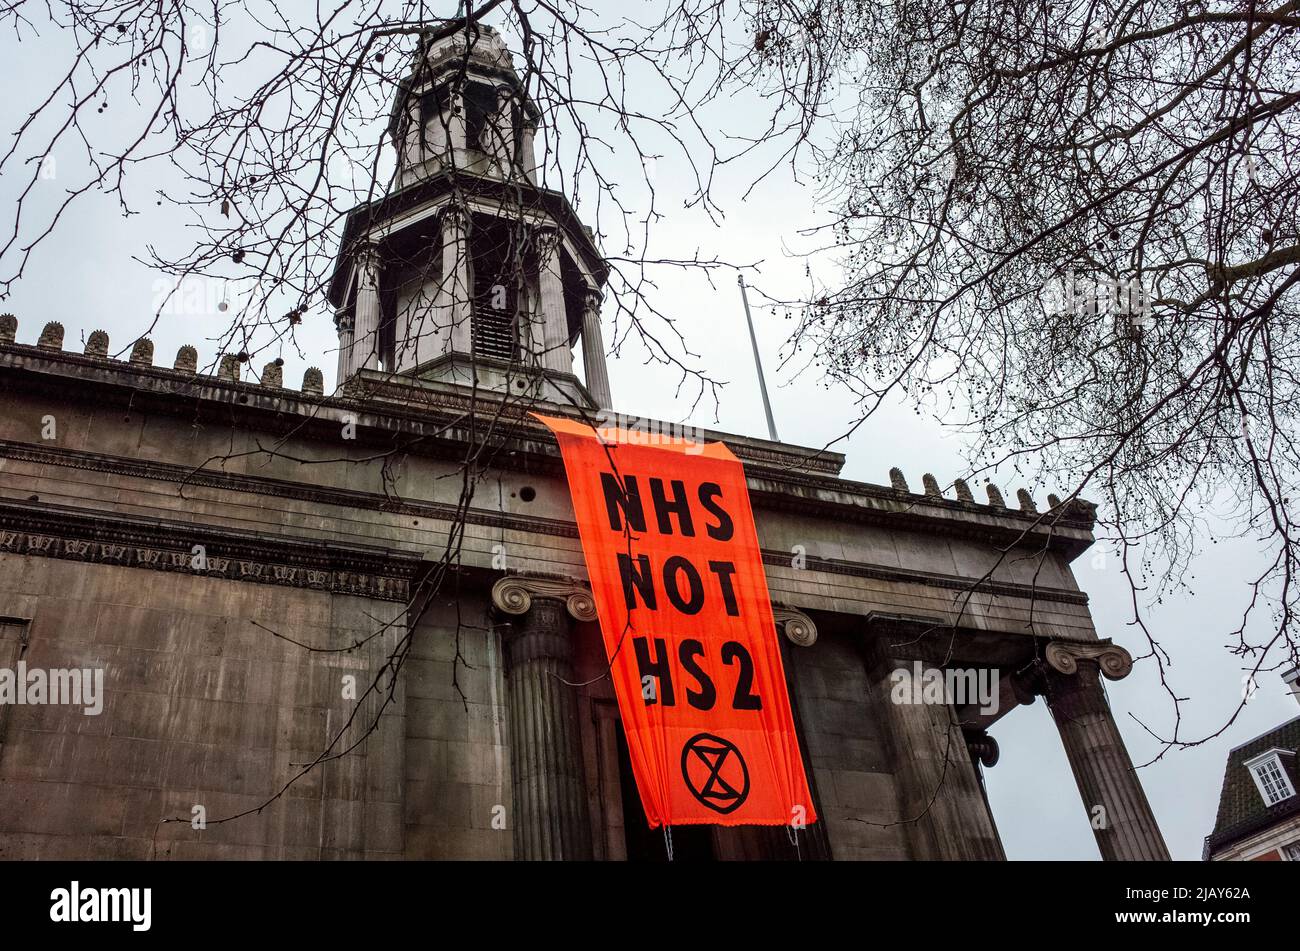 La bannière de campagne 'NHS NOT HS2' est suspendue à la Nouvelle église St Pancras le long de Euston Road, à l'extérieur de la gare Euston à Londres - 2021 Banque D'Images